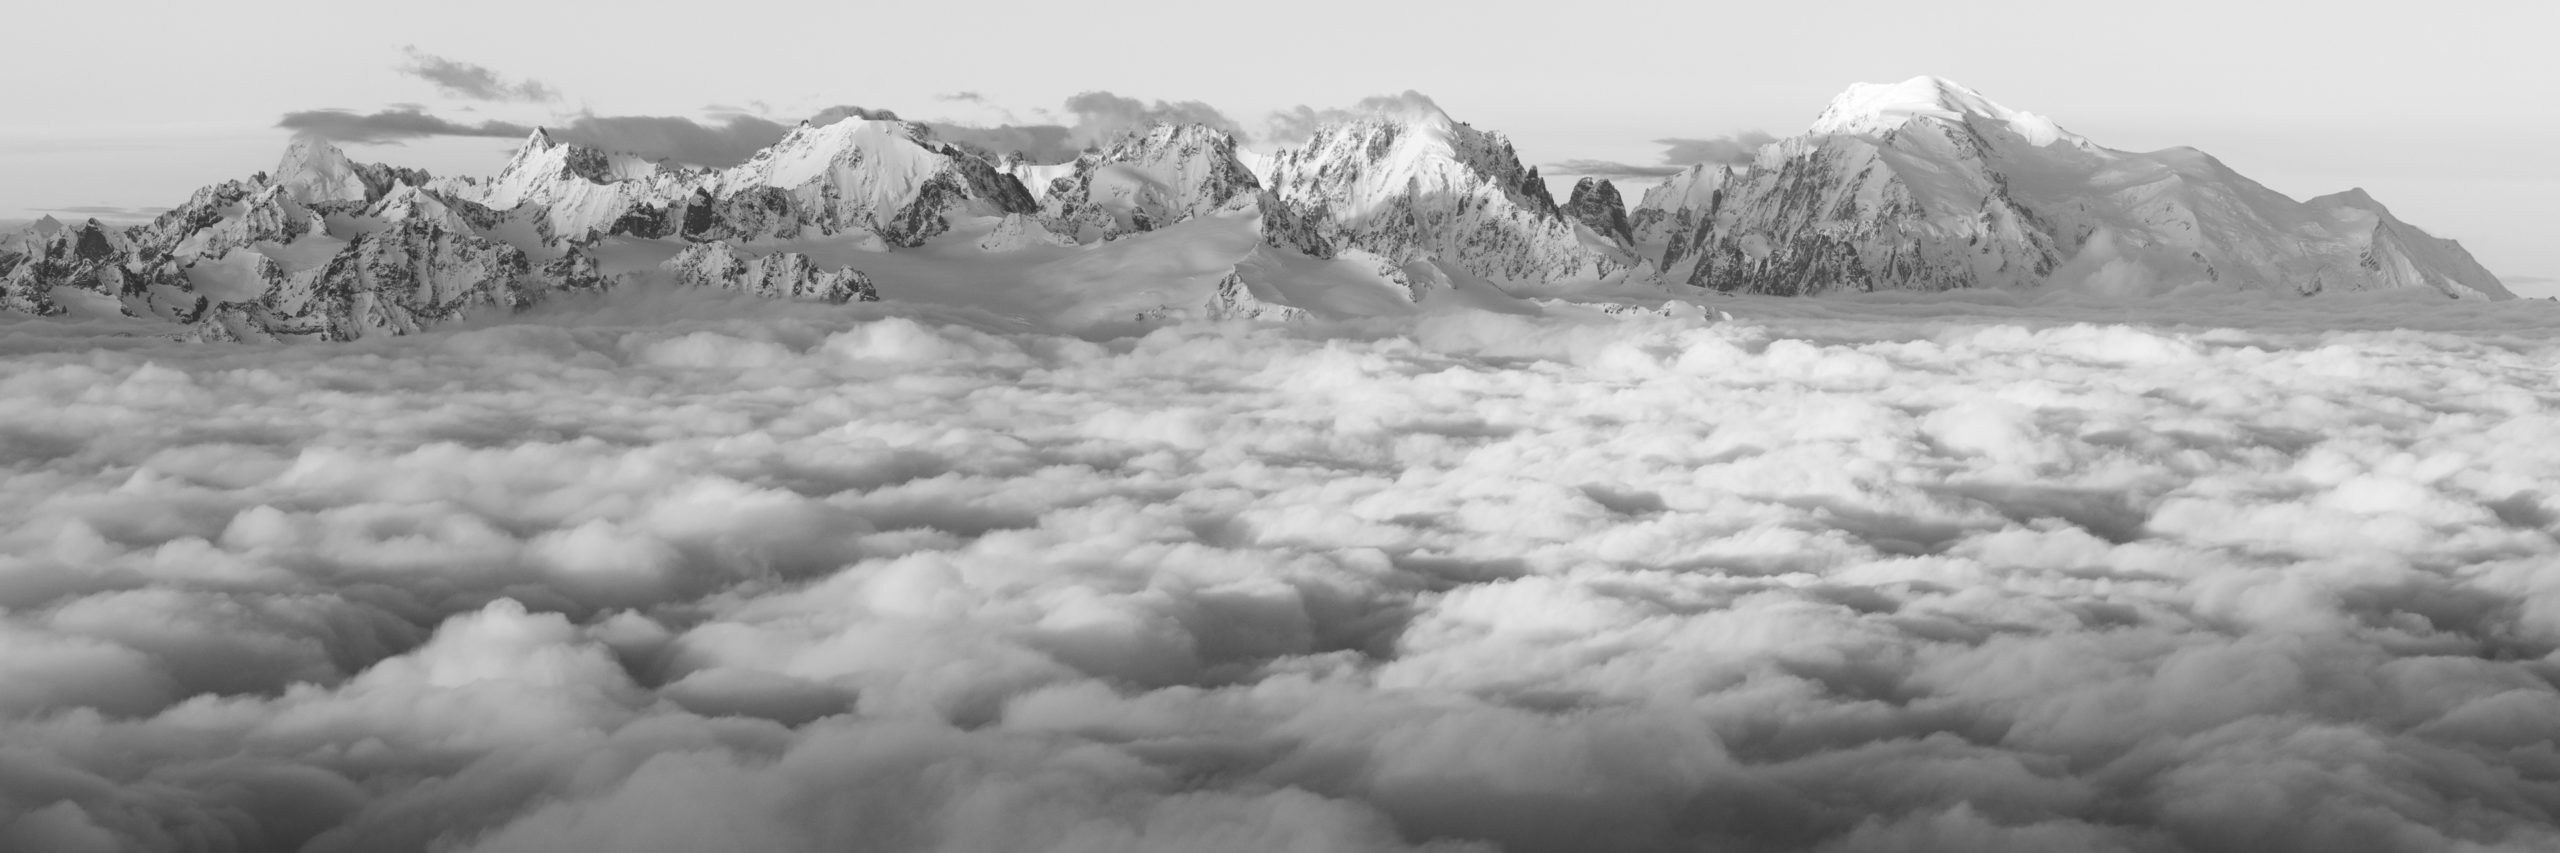 vue panoramique mont blanc en noir et blanc au dessus d'une mer de nuage - tirage photo montagne noir et blanc et encadrement professionnel